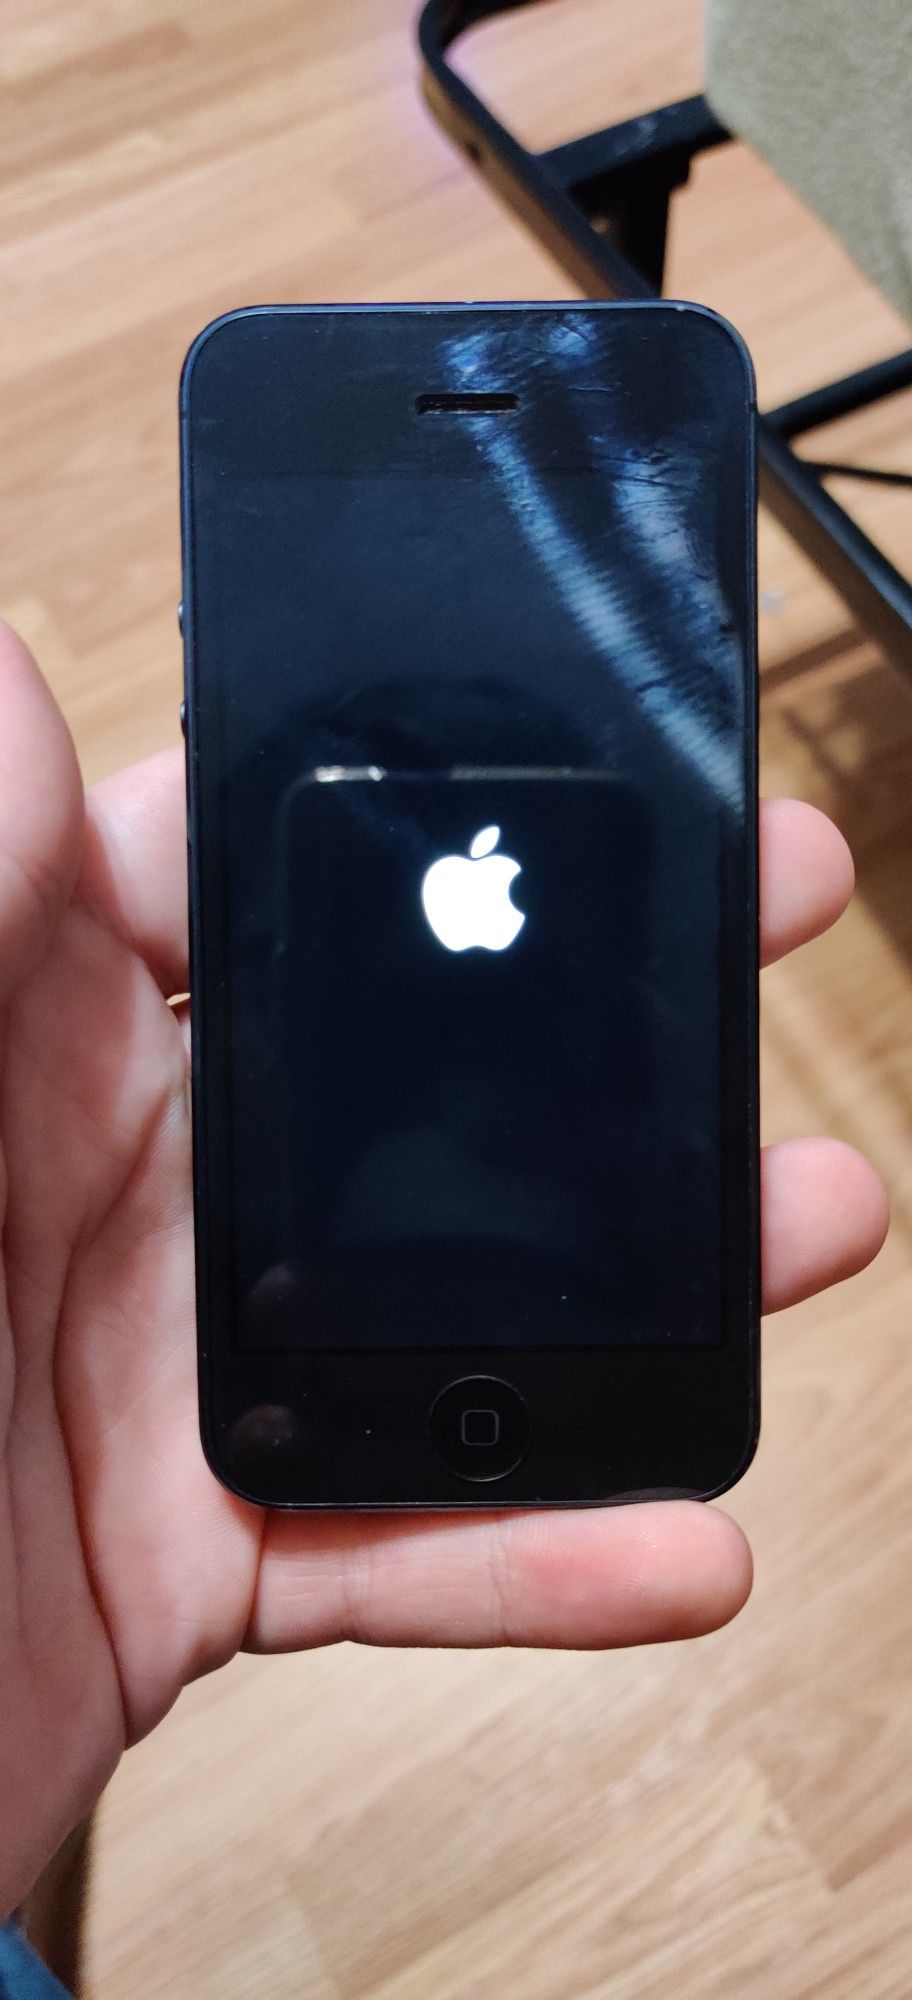 |Apple iPhone 5 64GB UNLOCKED| Black|